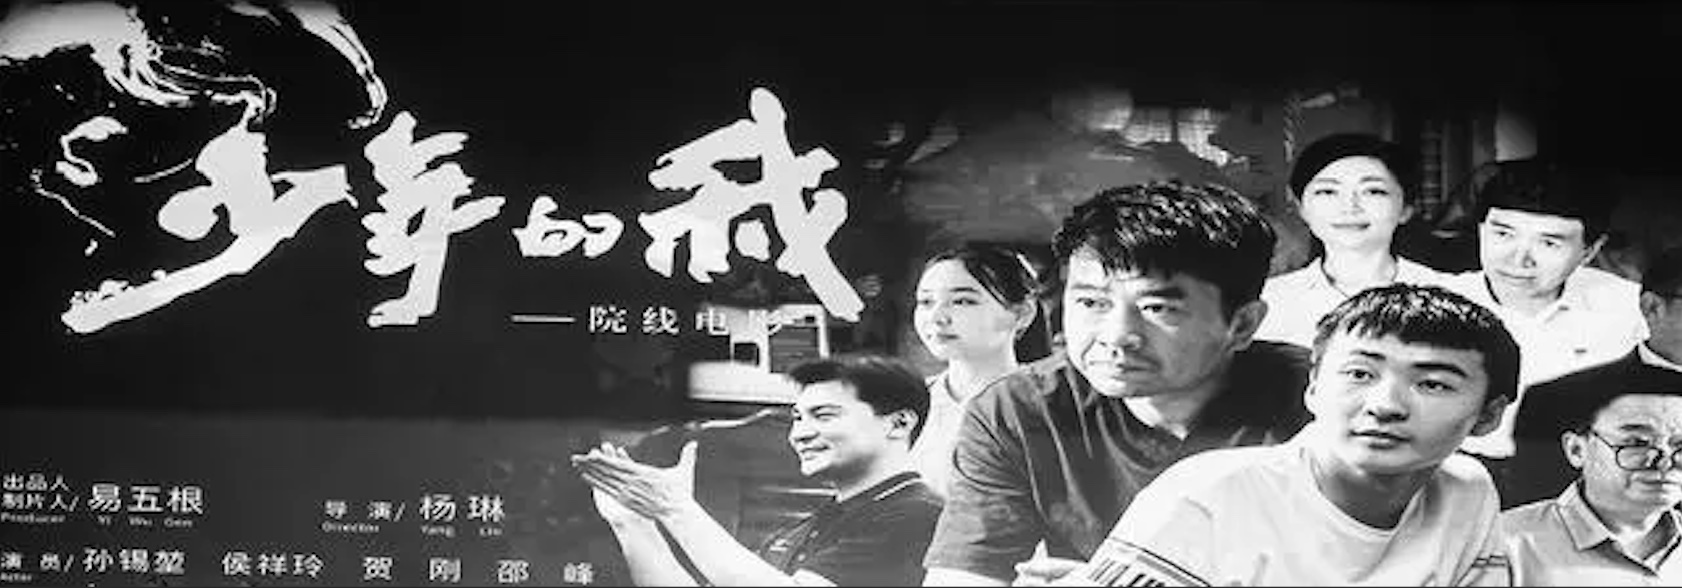 《少年的我》在福建晉江首映 發揮優秀電影作品育人作用